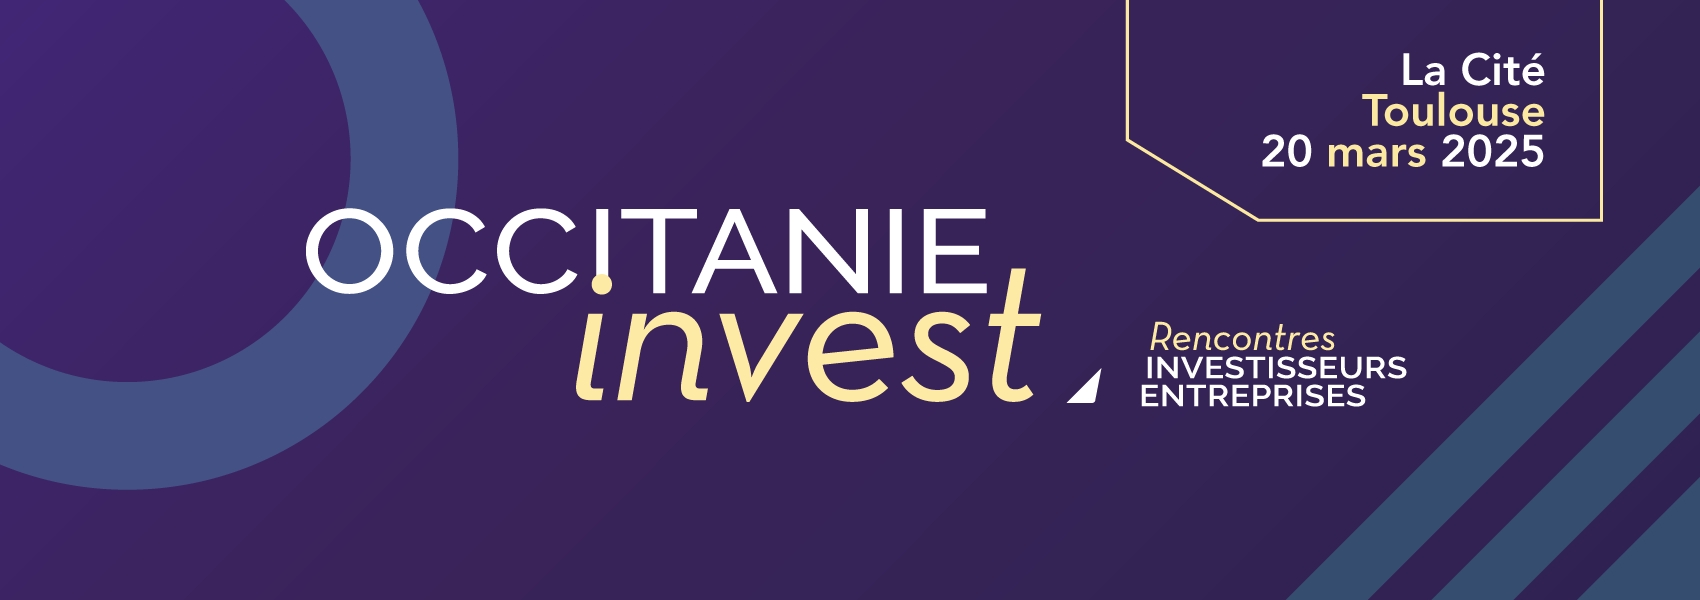 Occitanie Invest - 20 mars 2025